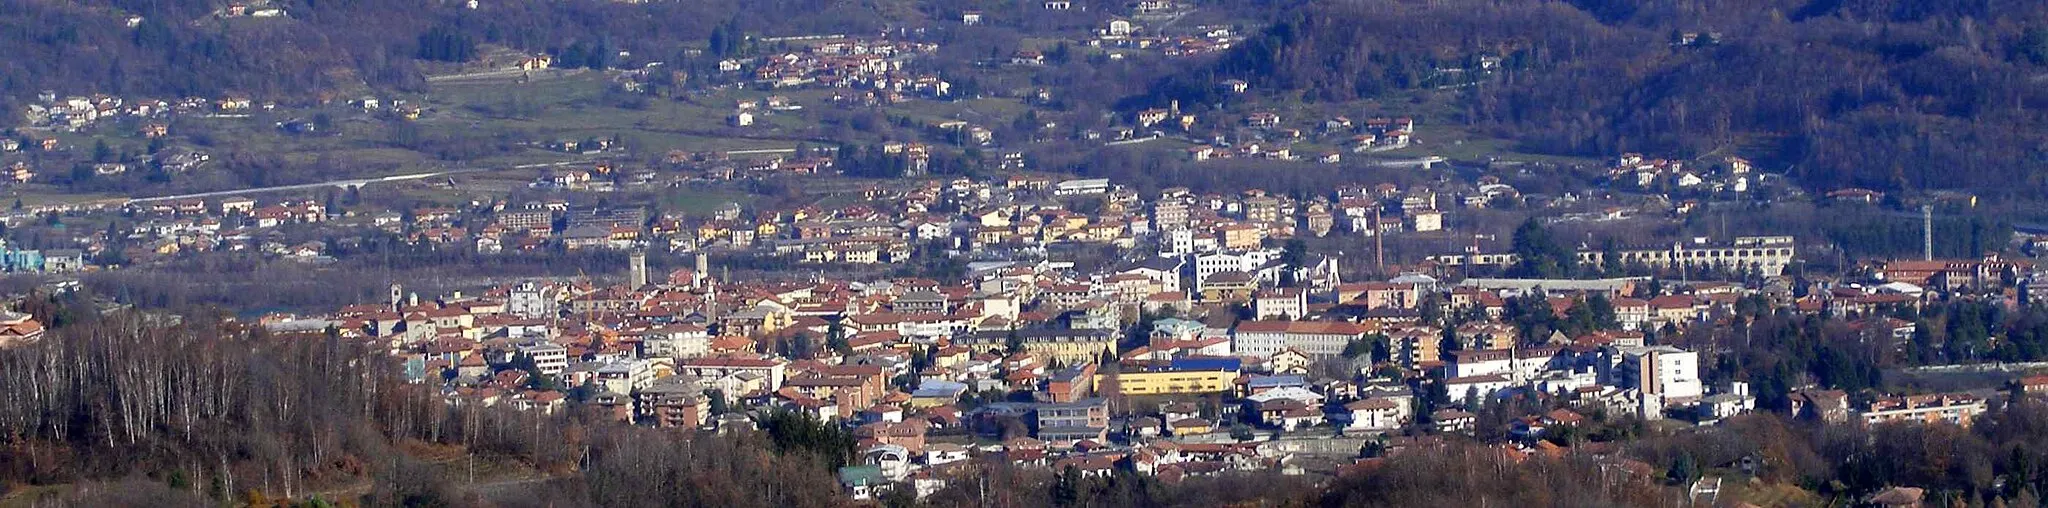 Afbeelding van Piemonte